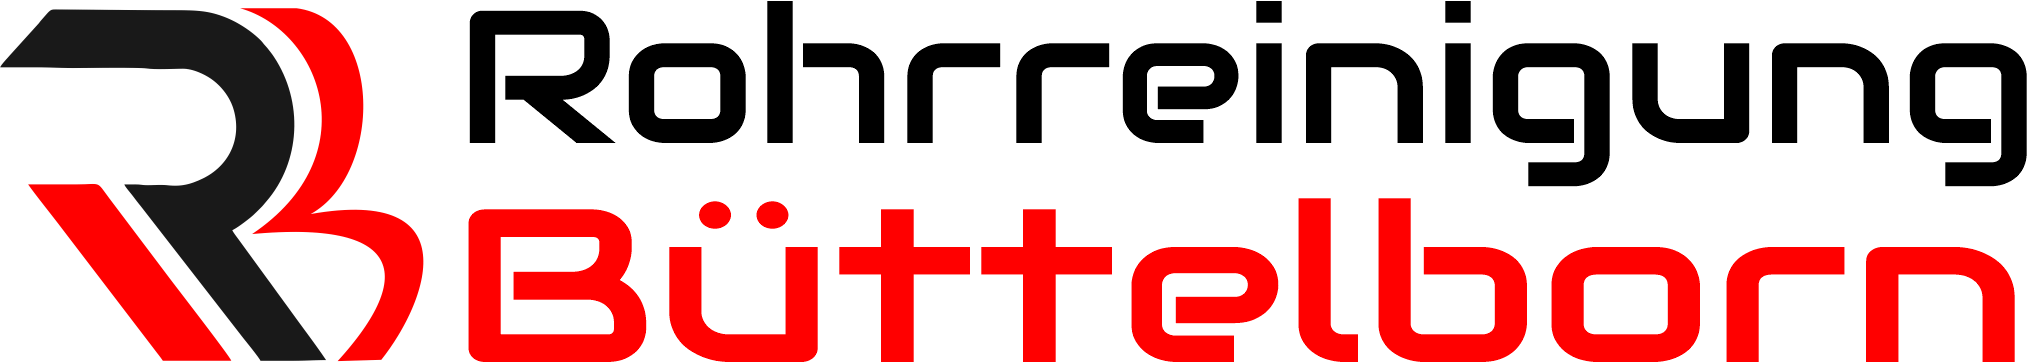 Rohrreinigung Büttelborn Logo